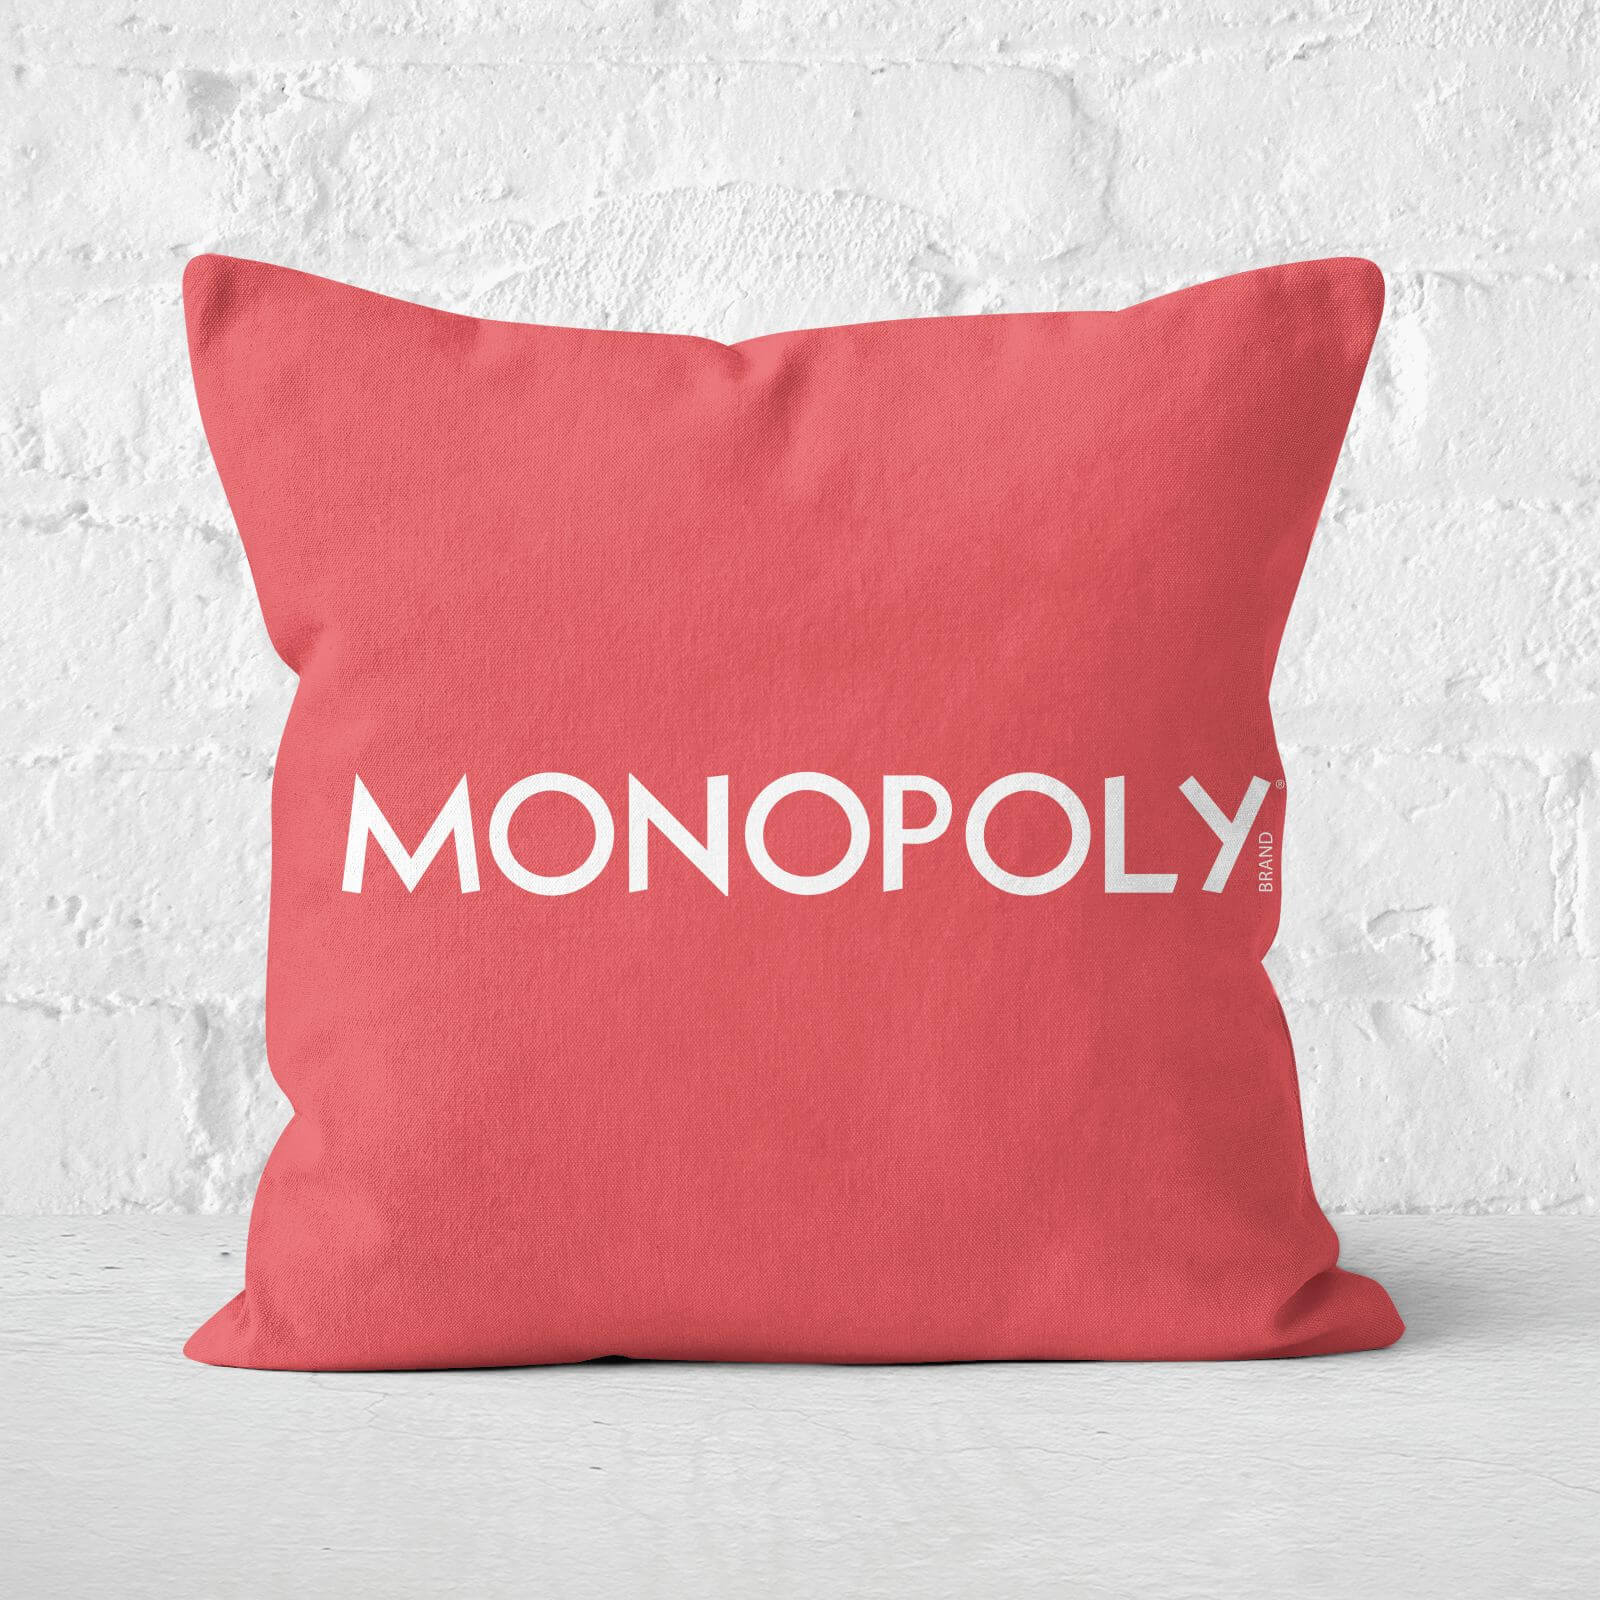 Monopoly Pattern Square Cushion - 40x40cm - Soft Touch von Decorsome